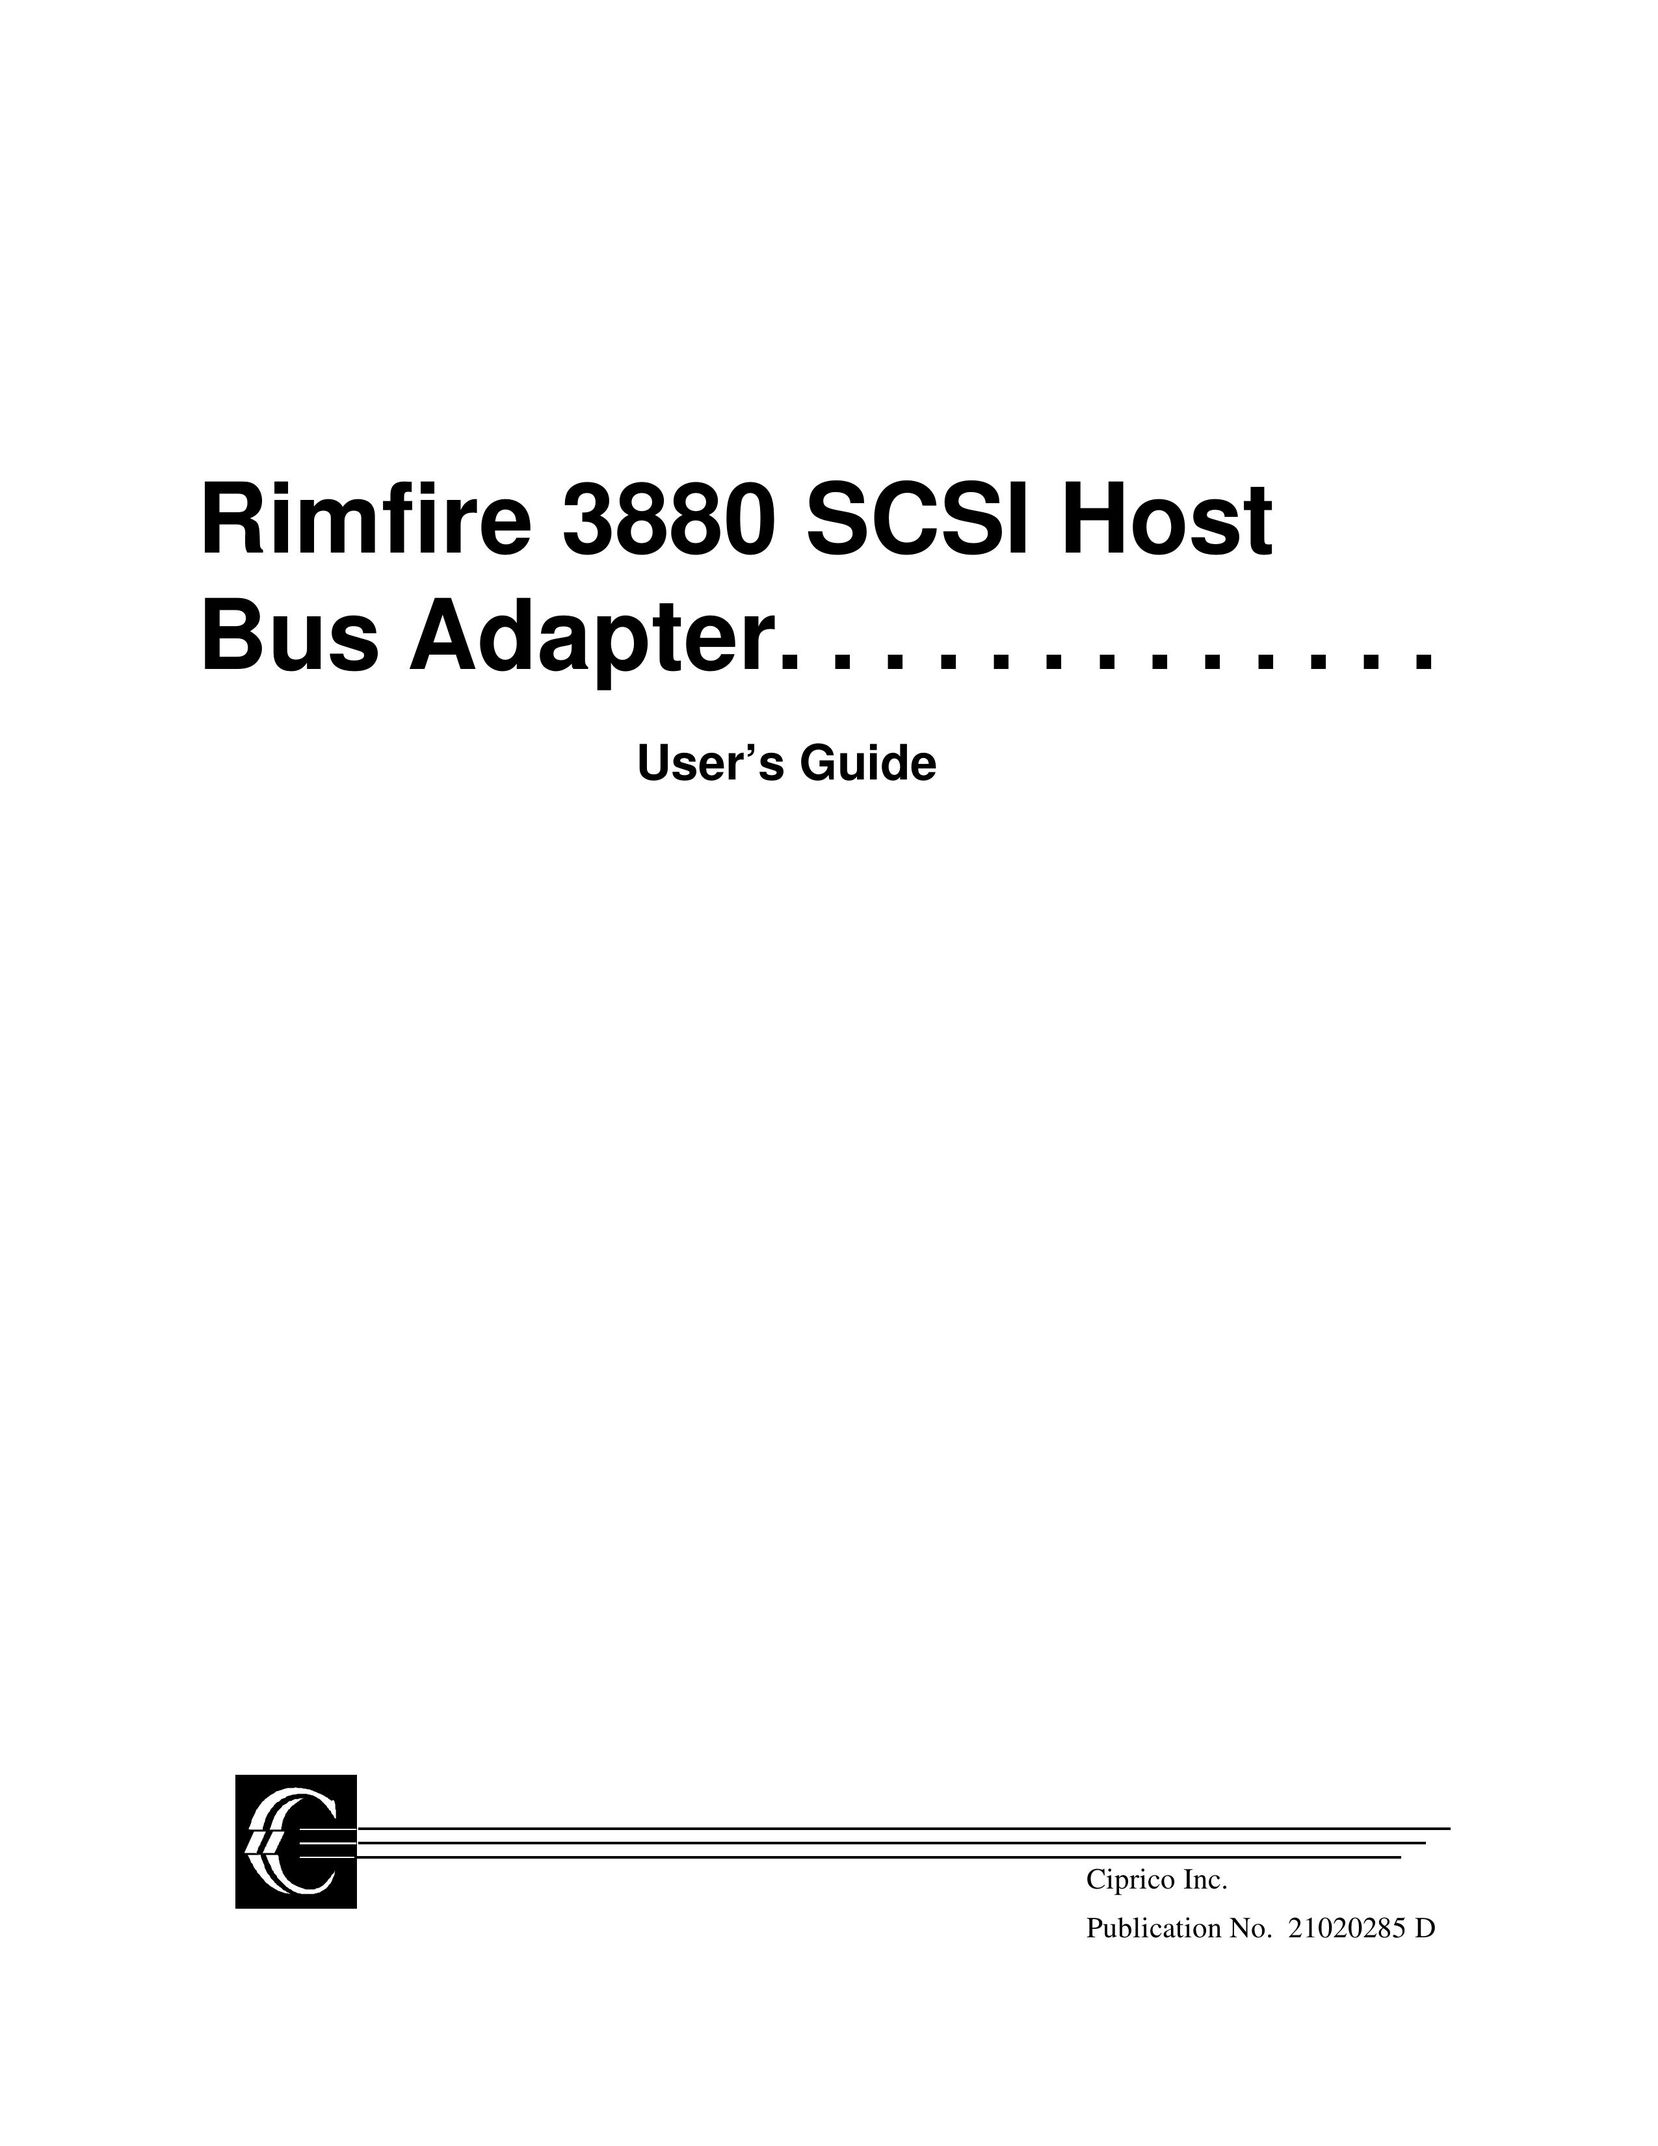 Ciprico Rimfire 3880 Network Card User Manual